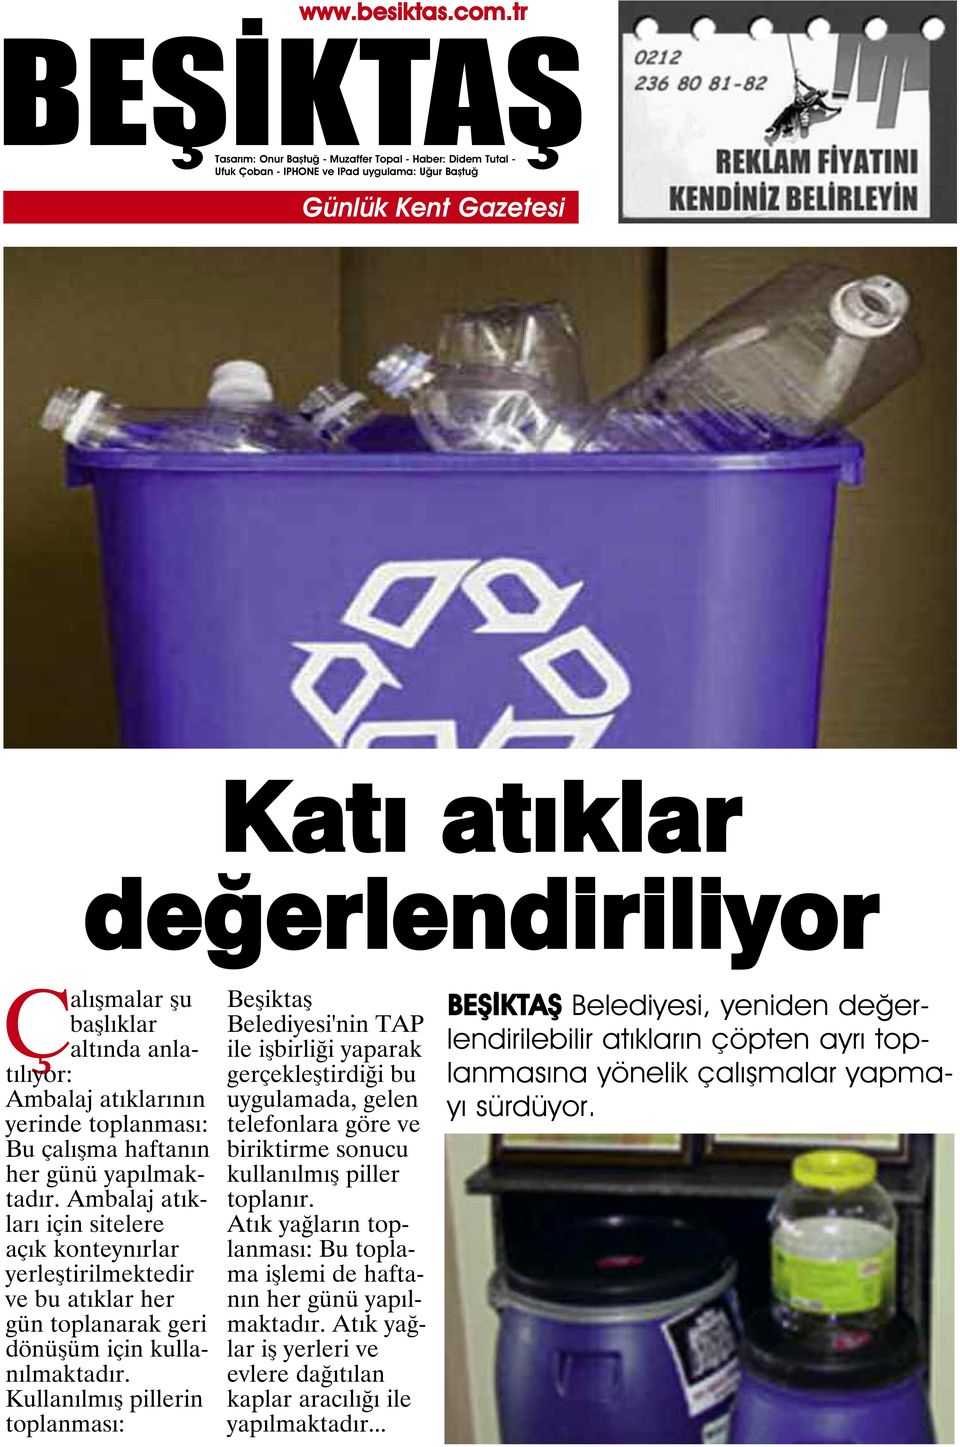 Kullanılmış pillerin toplanması: Beşiktaş Belediyesi'nin TAP ile işbirliği yaparak gerçekleştirdiği bu uygulamada, gelen telefonlara göre ve biriktirme sonucu kullanılmış piller toplanır.